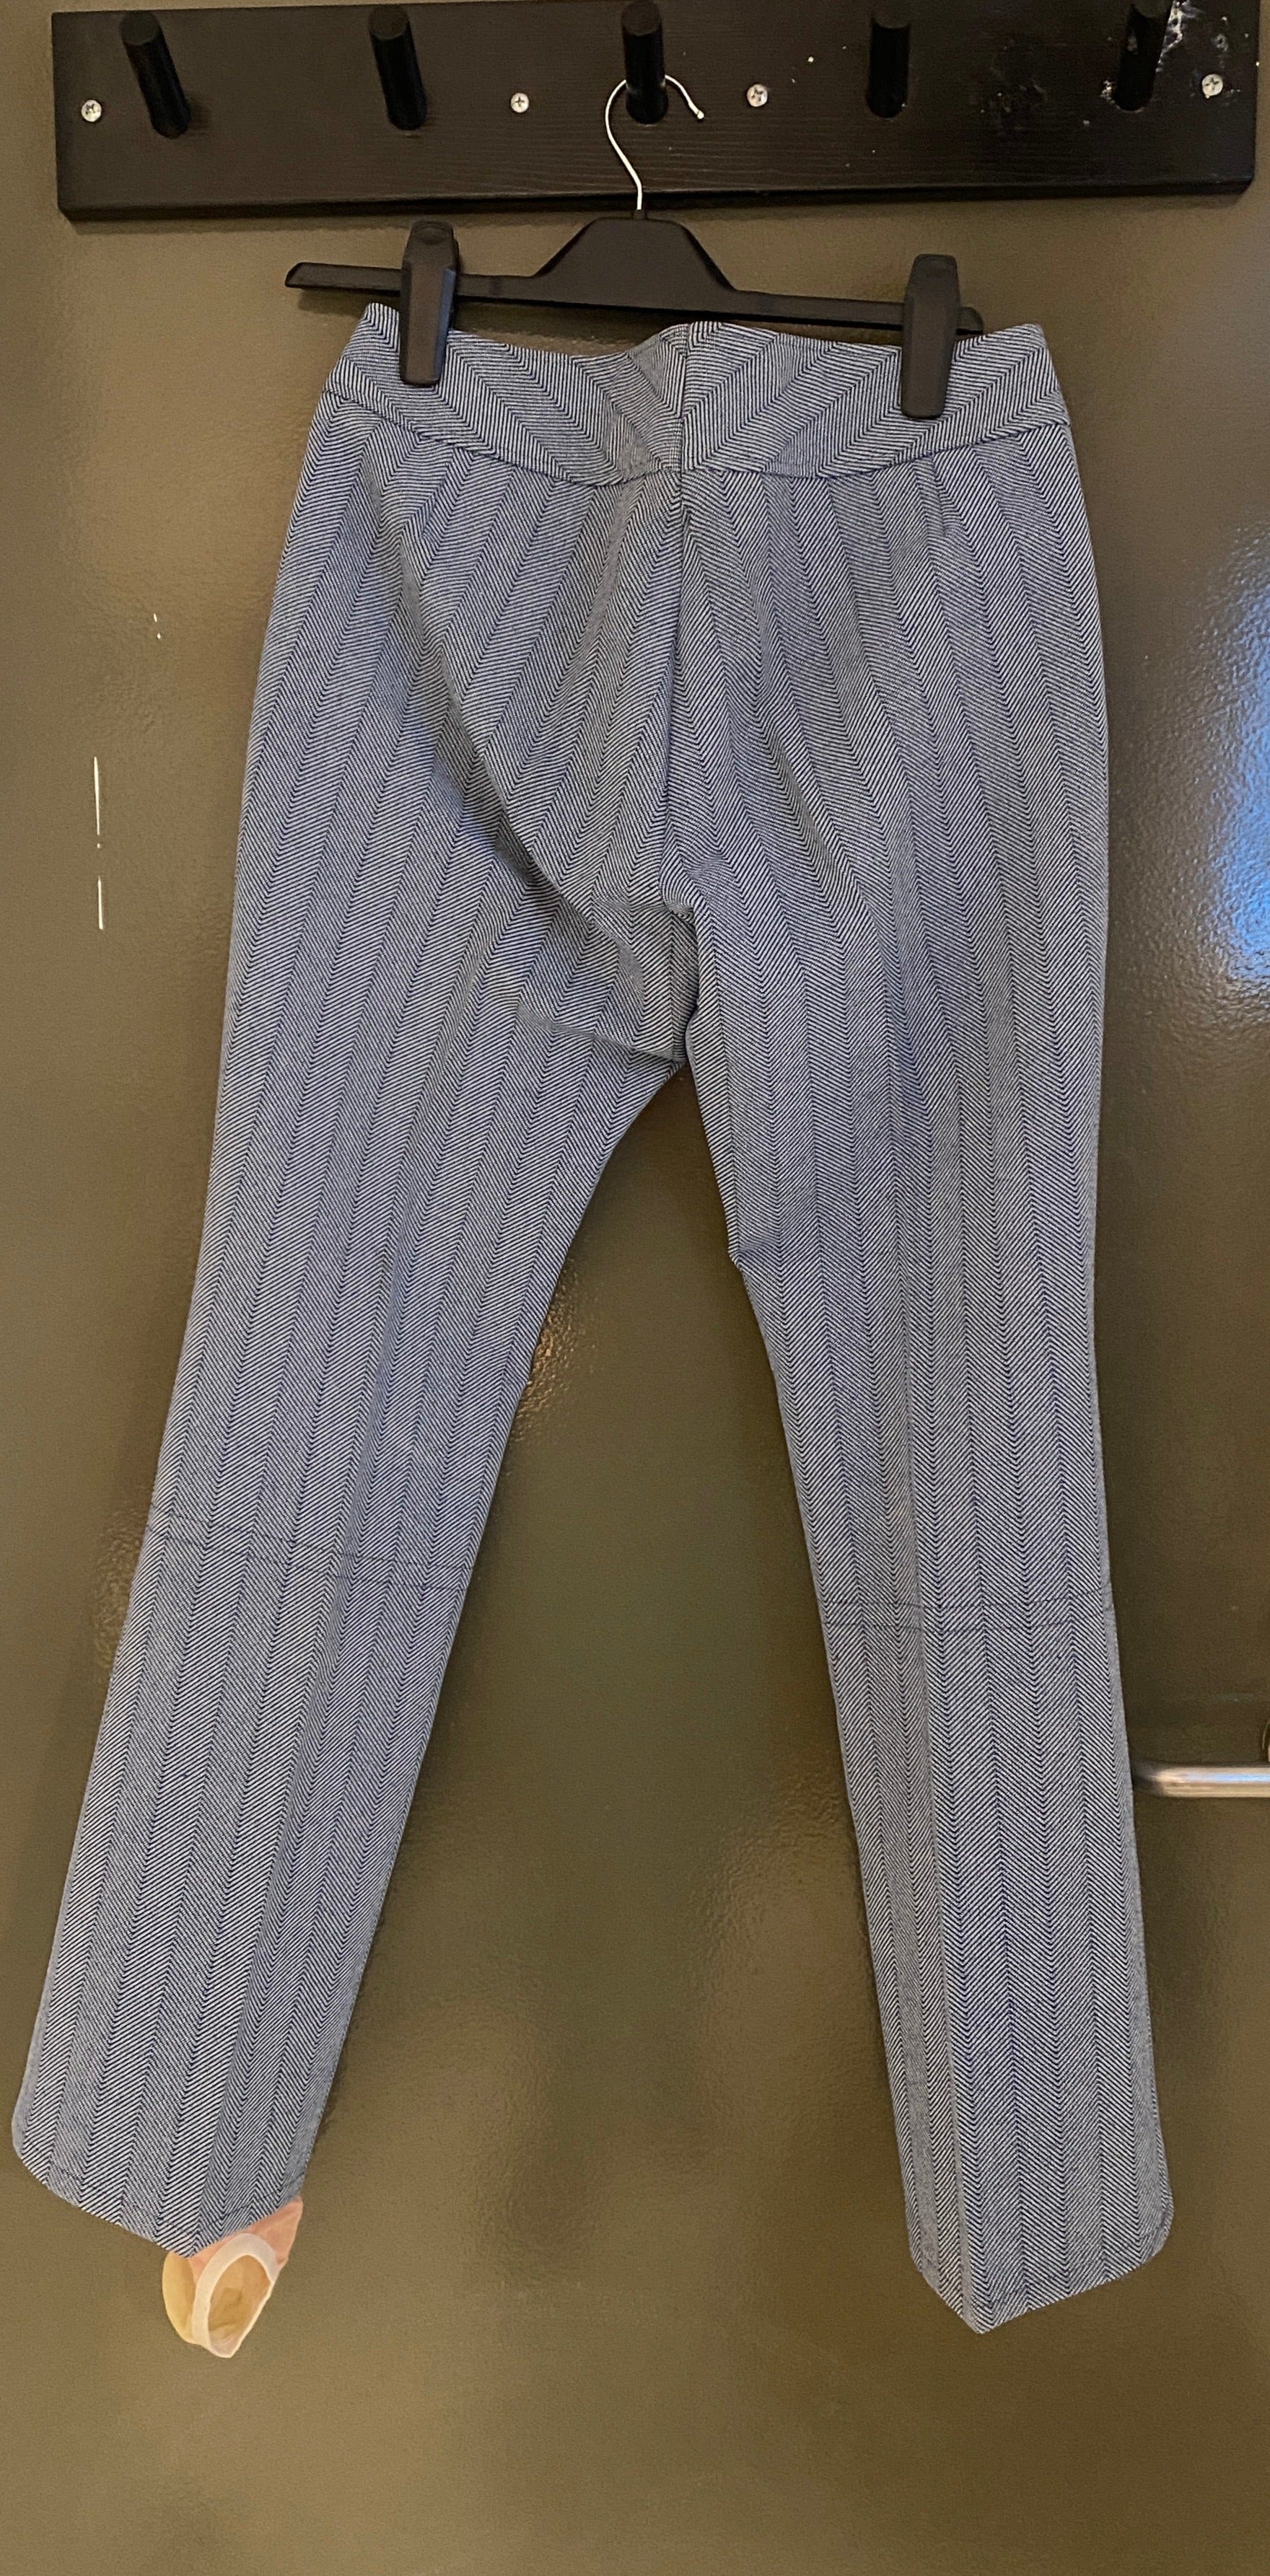 Vintage Feller Keilhosen Blue Herringbone Snow Pants, rear view